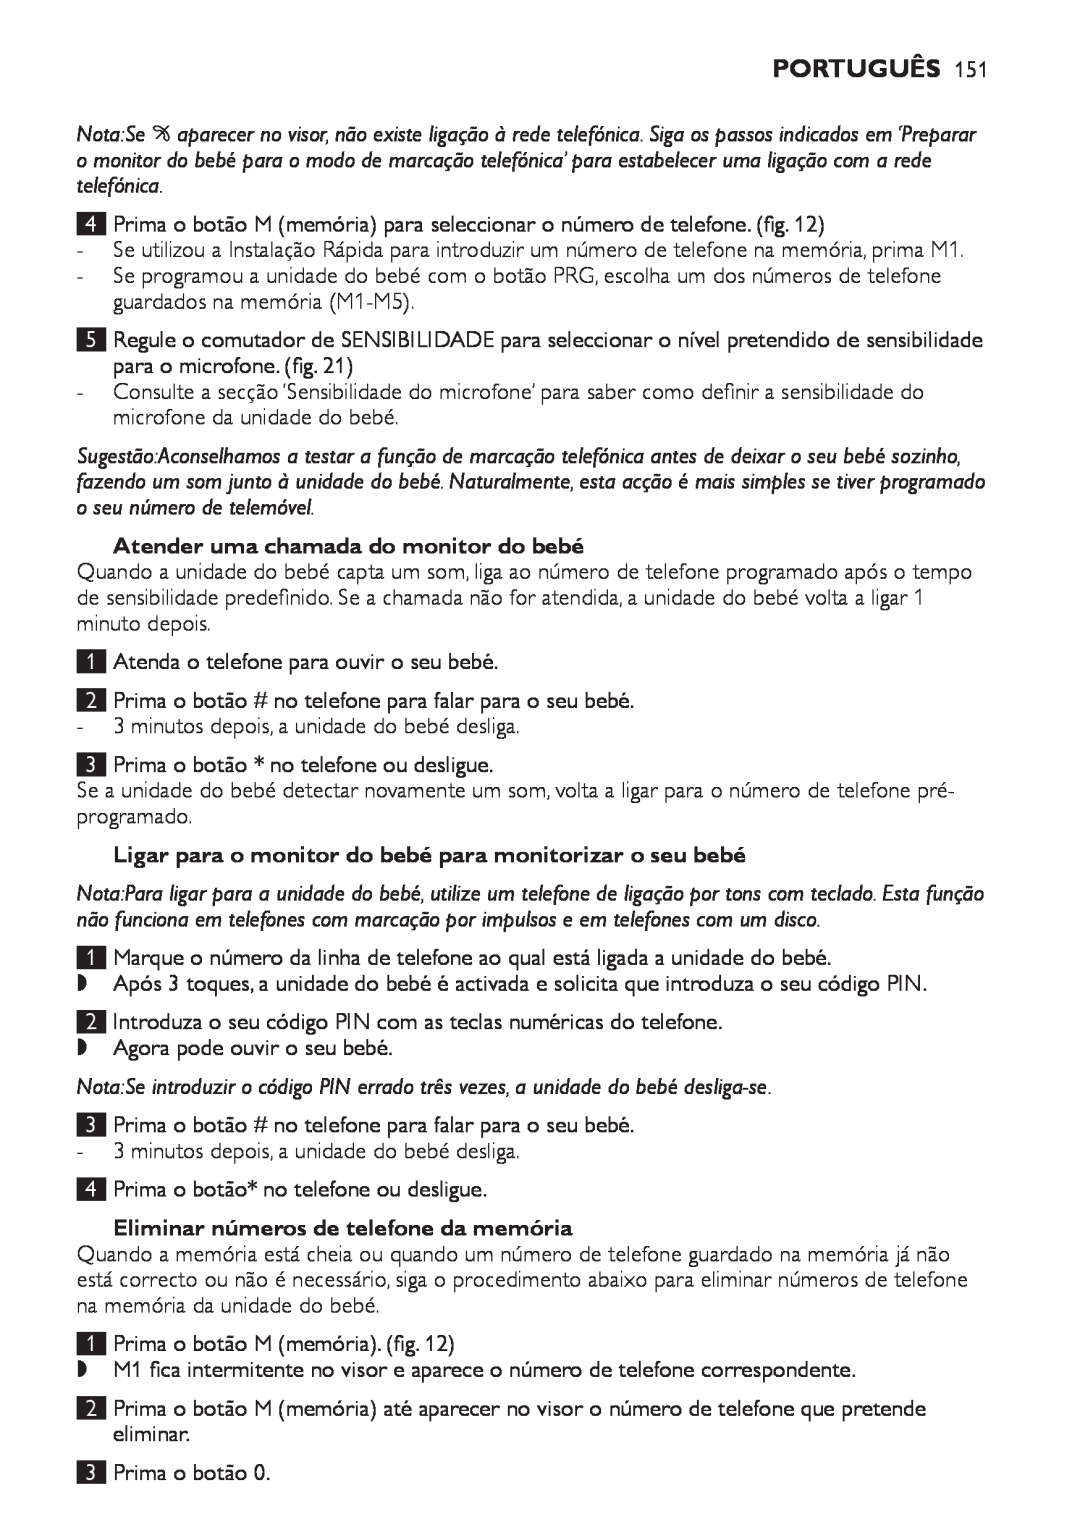 Philips SCD 469 manual Atender uma chamada do monitor do bebé, Eliminar números de telefone da memória, Português 